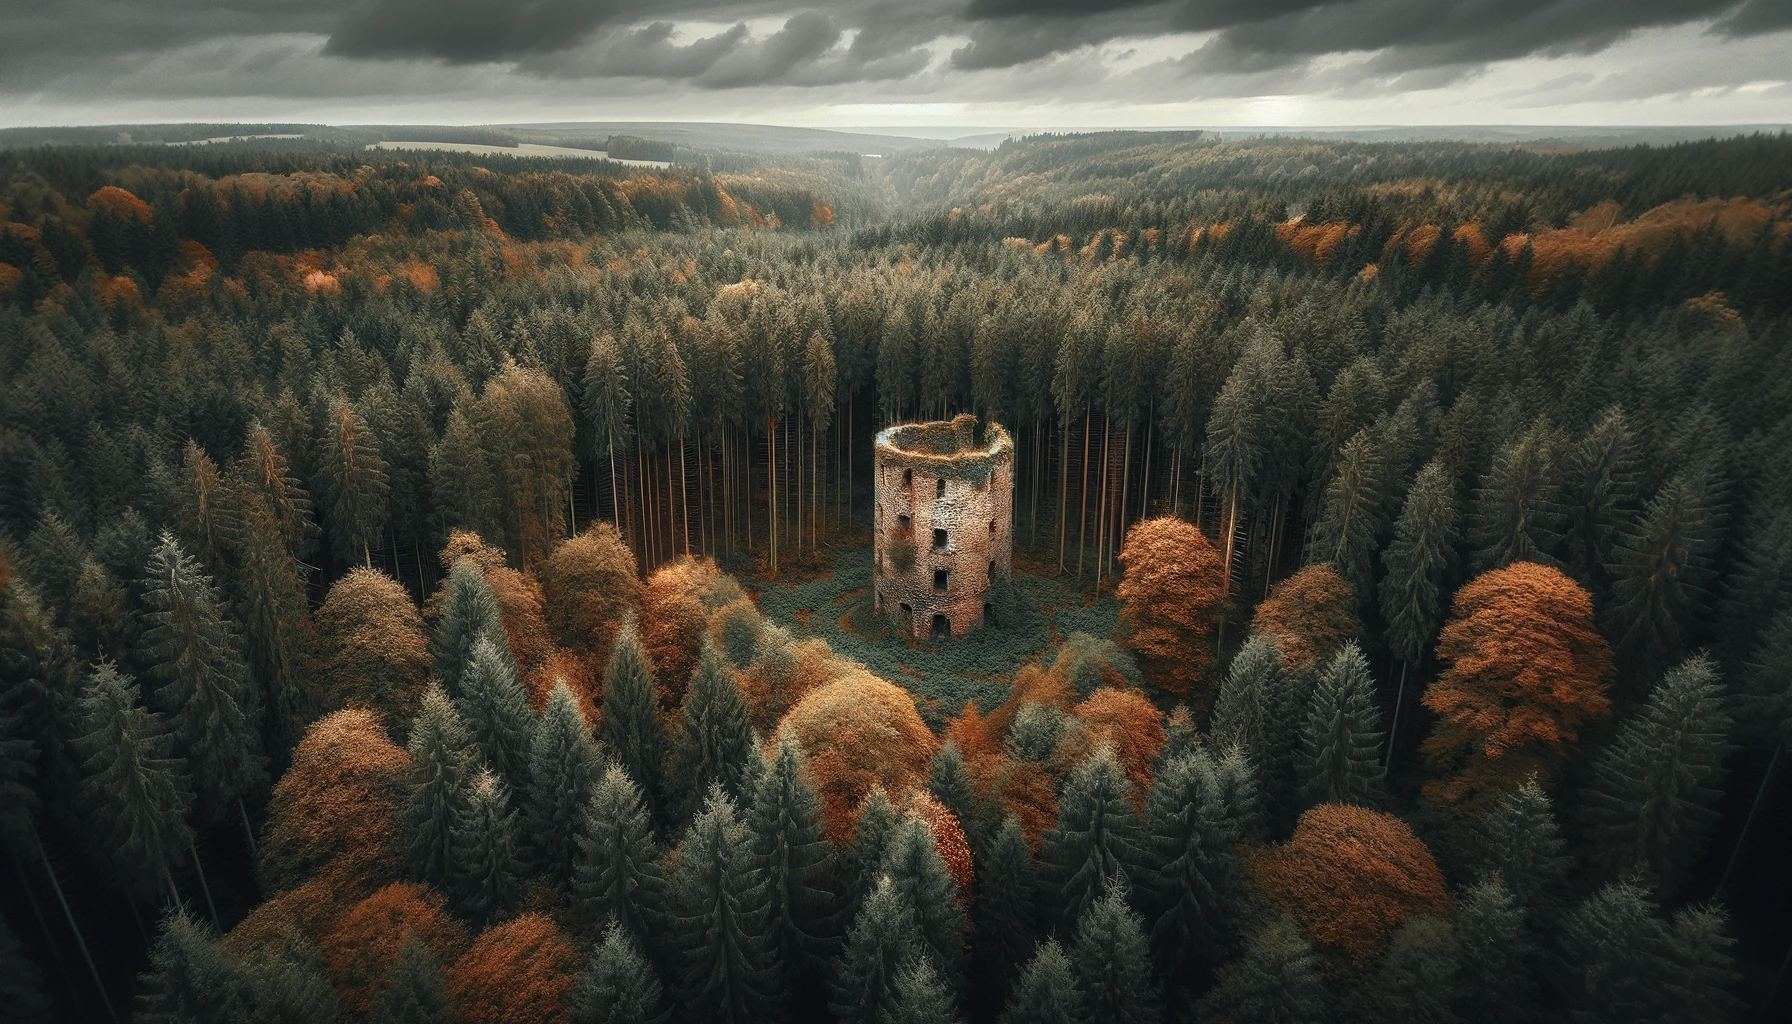 Ruine eines weiteren alten Turm mitten im Wald